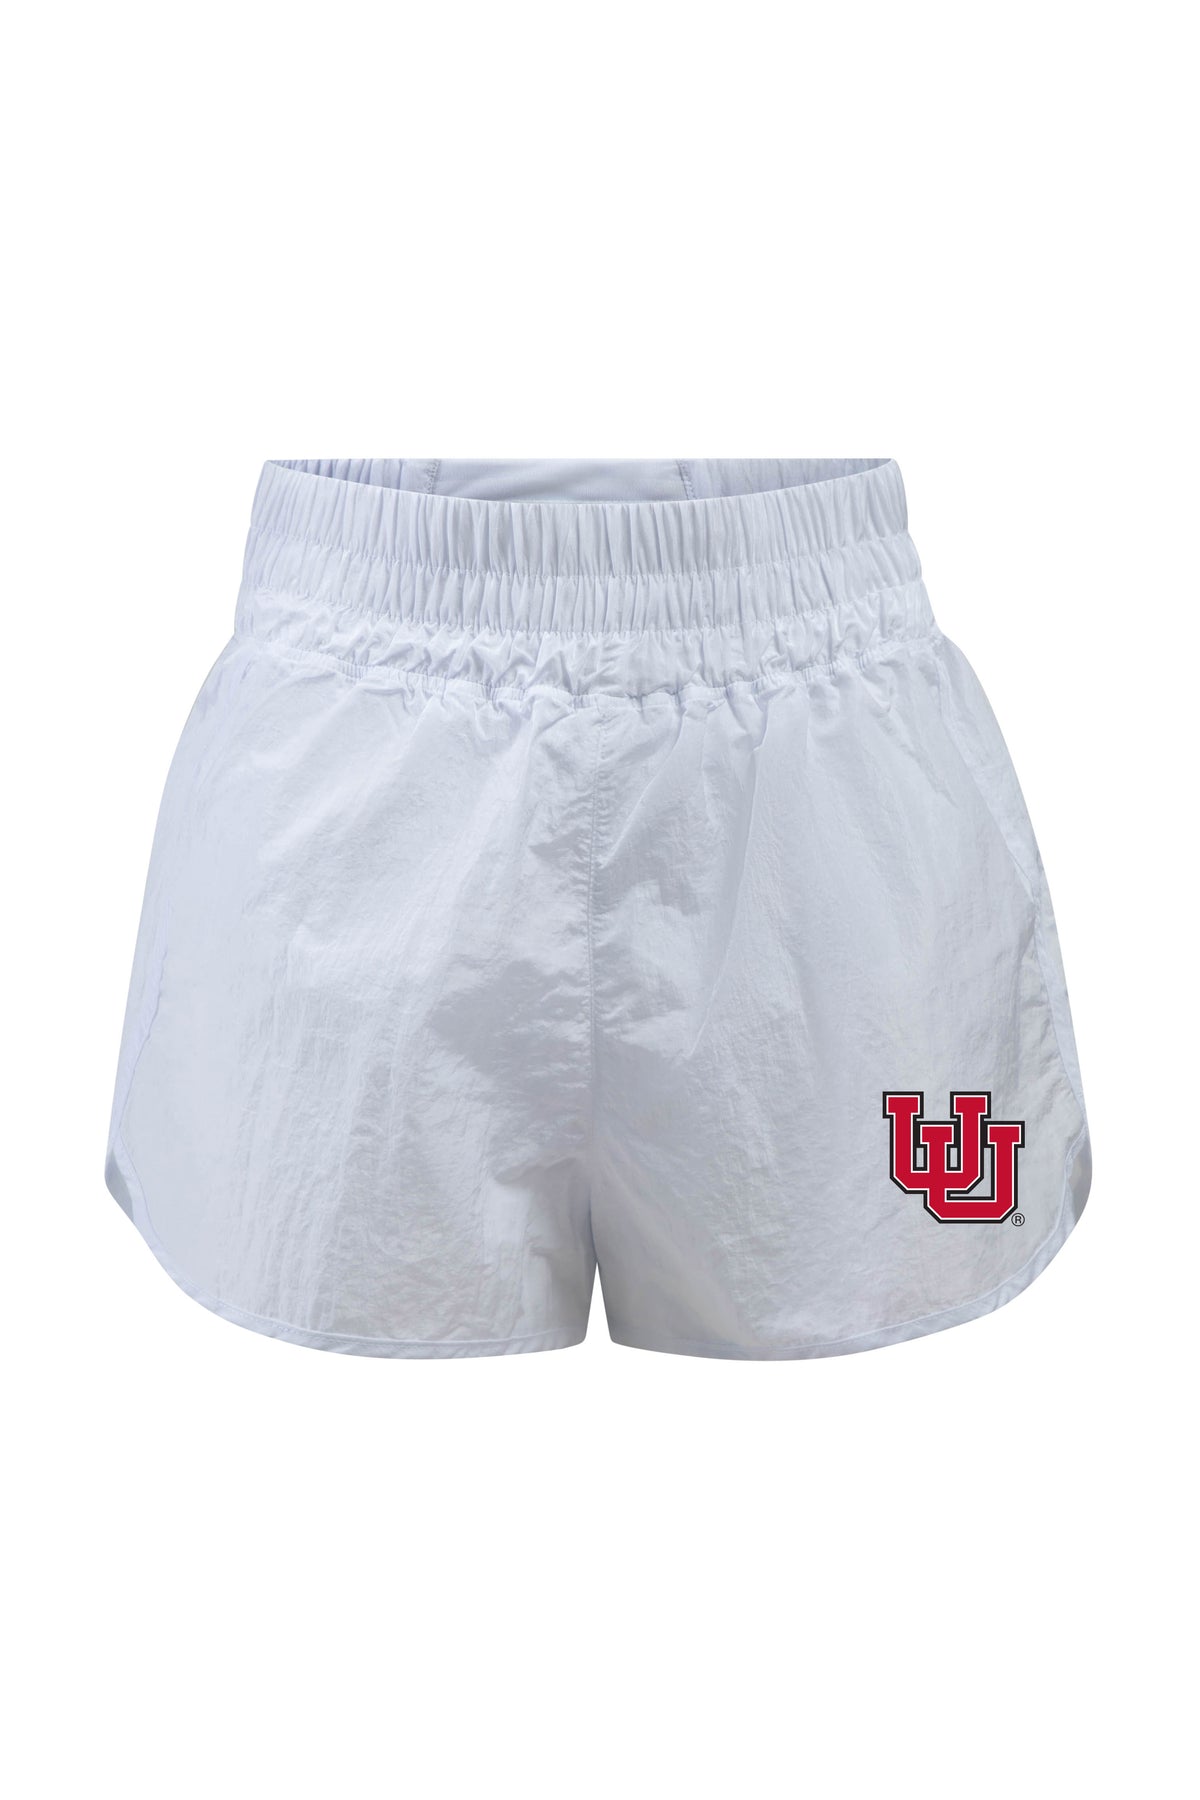 University of Utah Boxer Short